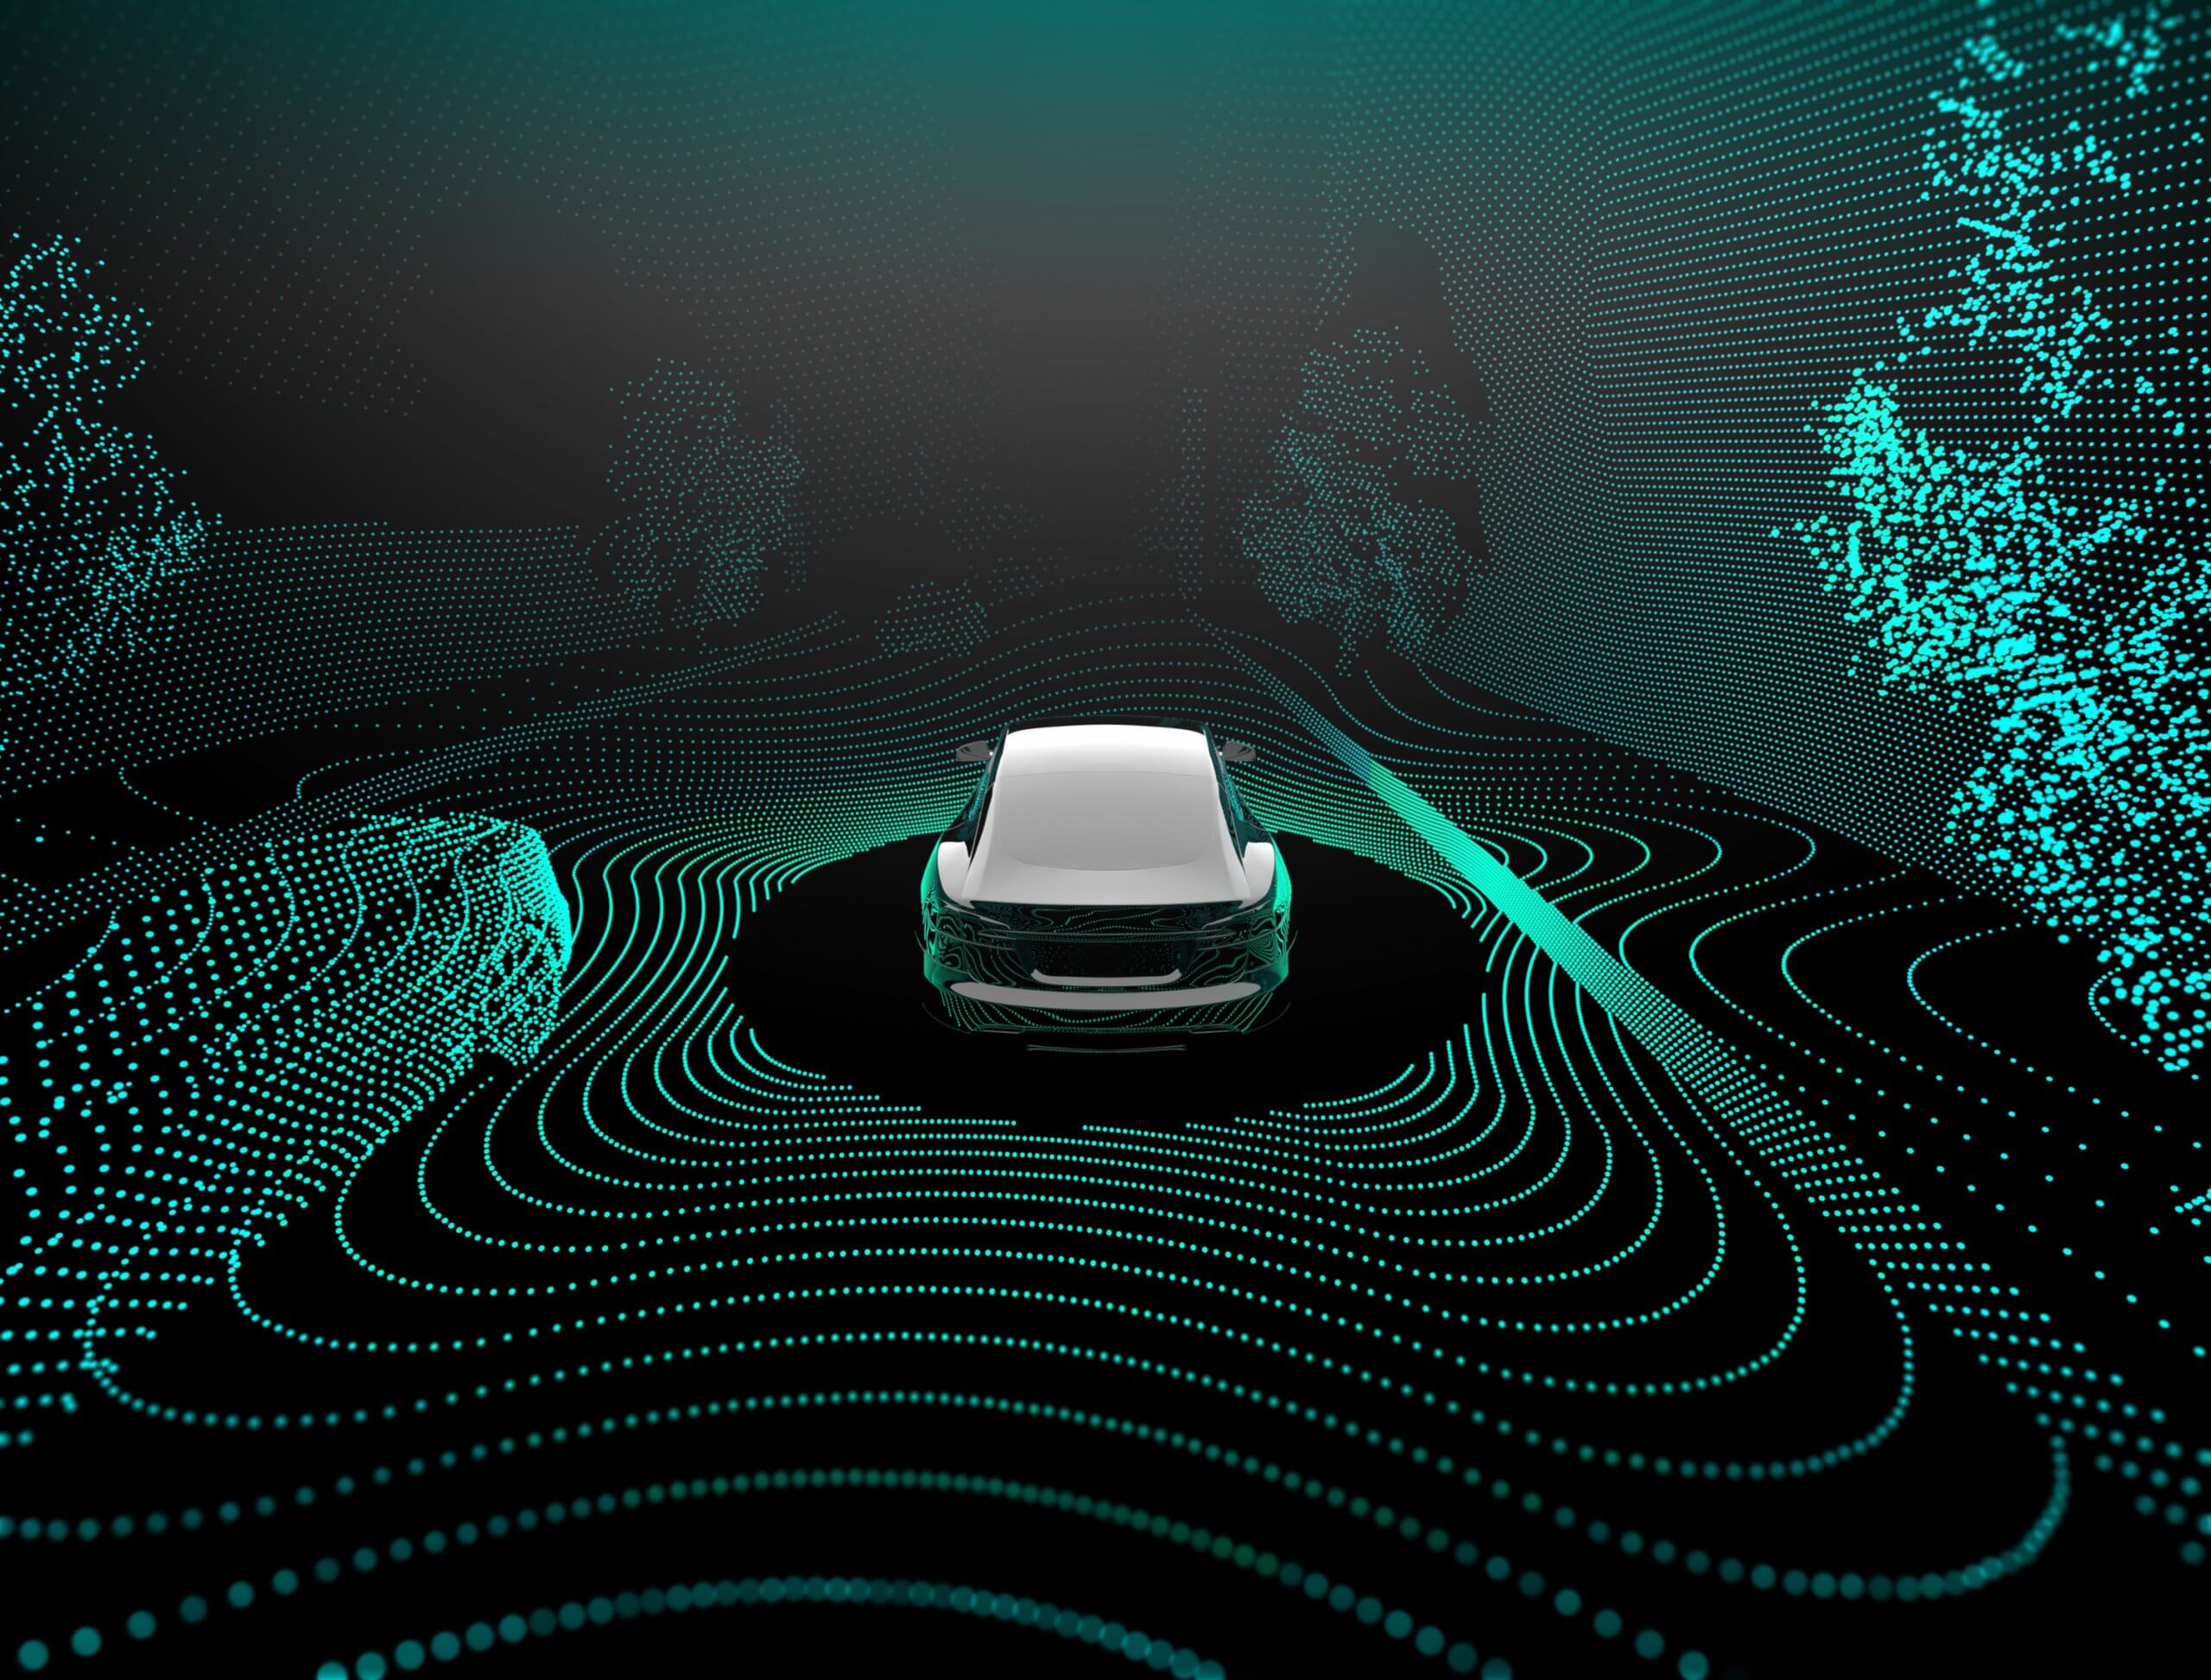 Autonomous vehicles concept image.